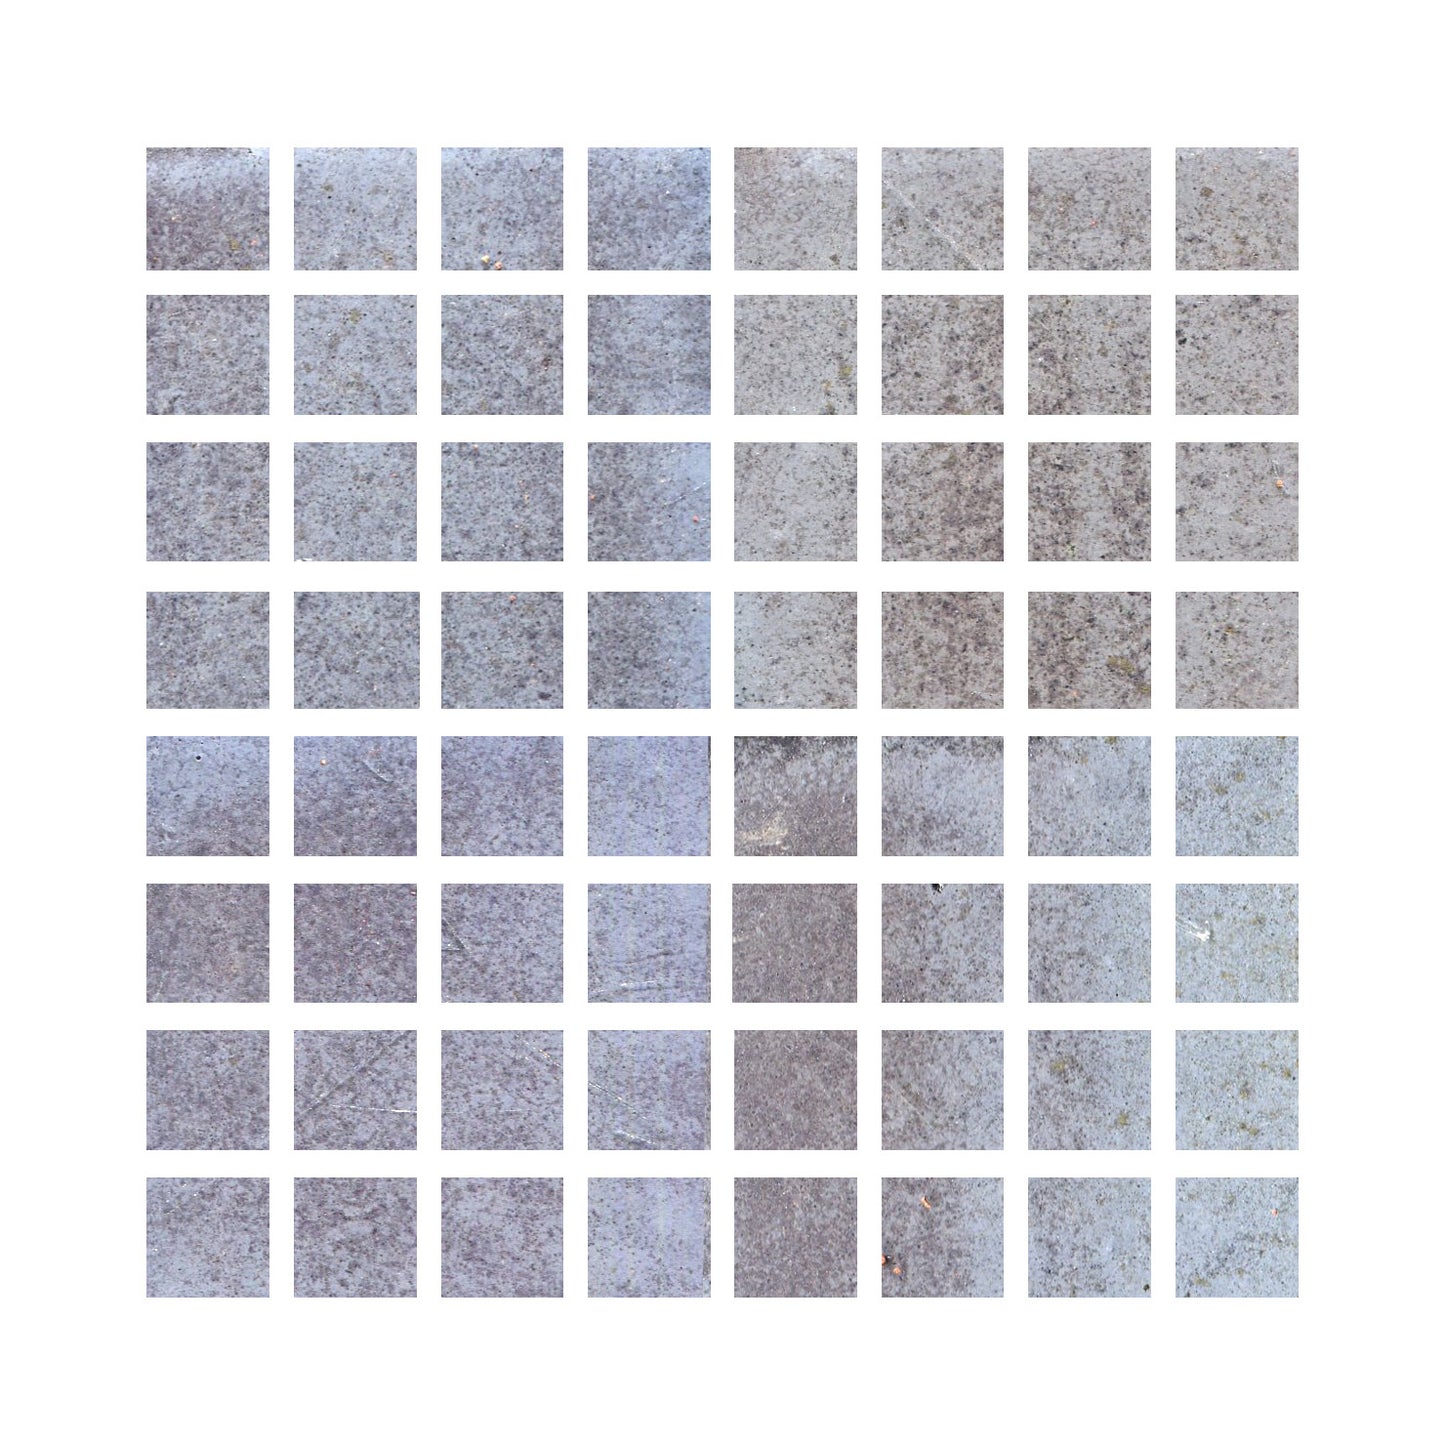 Oolong grey 1x1 mosaic